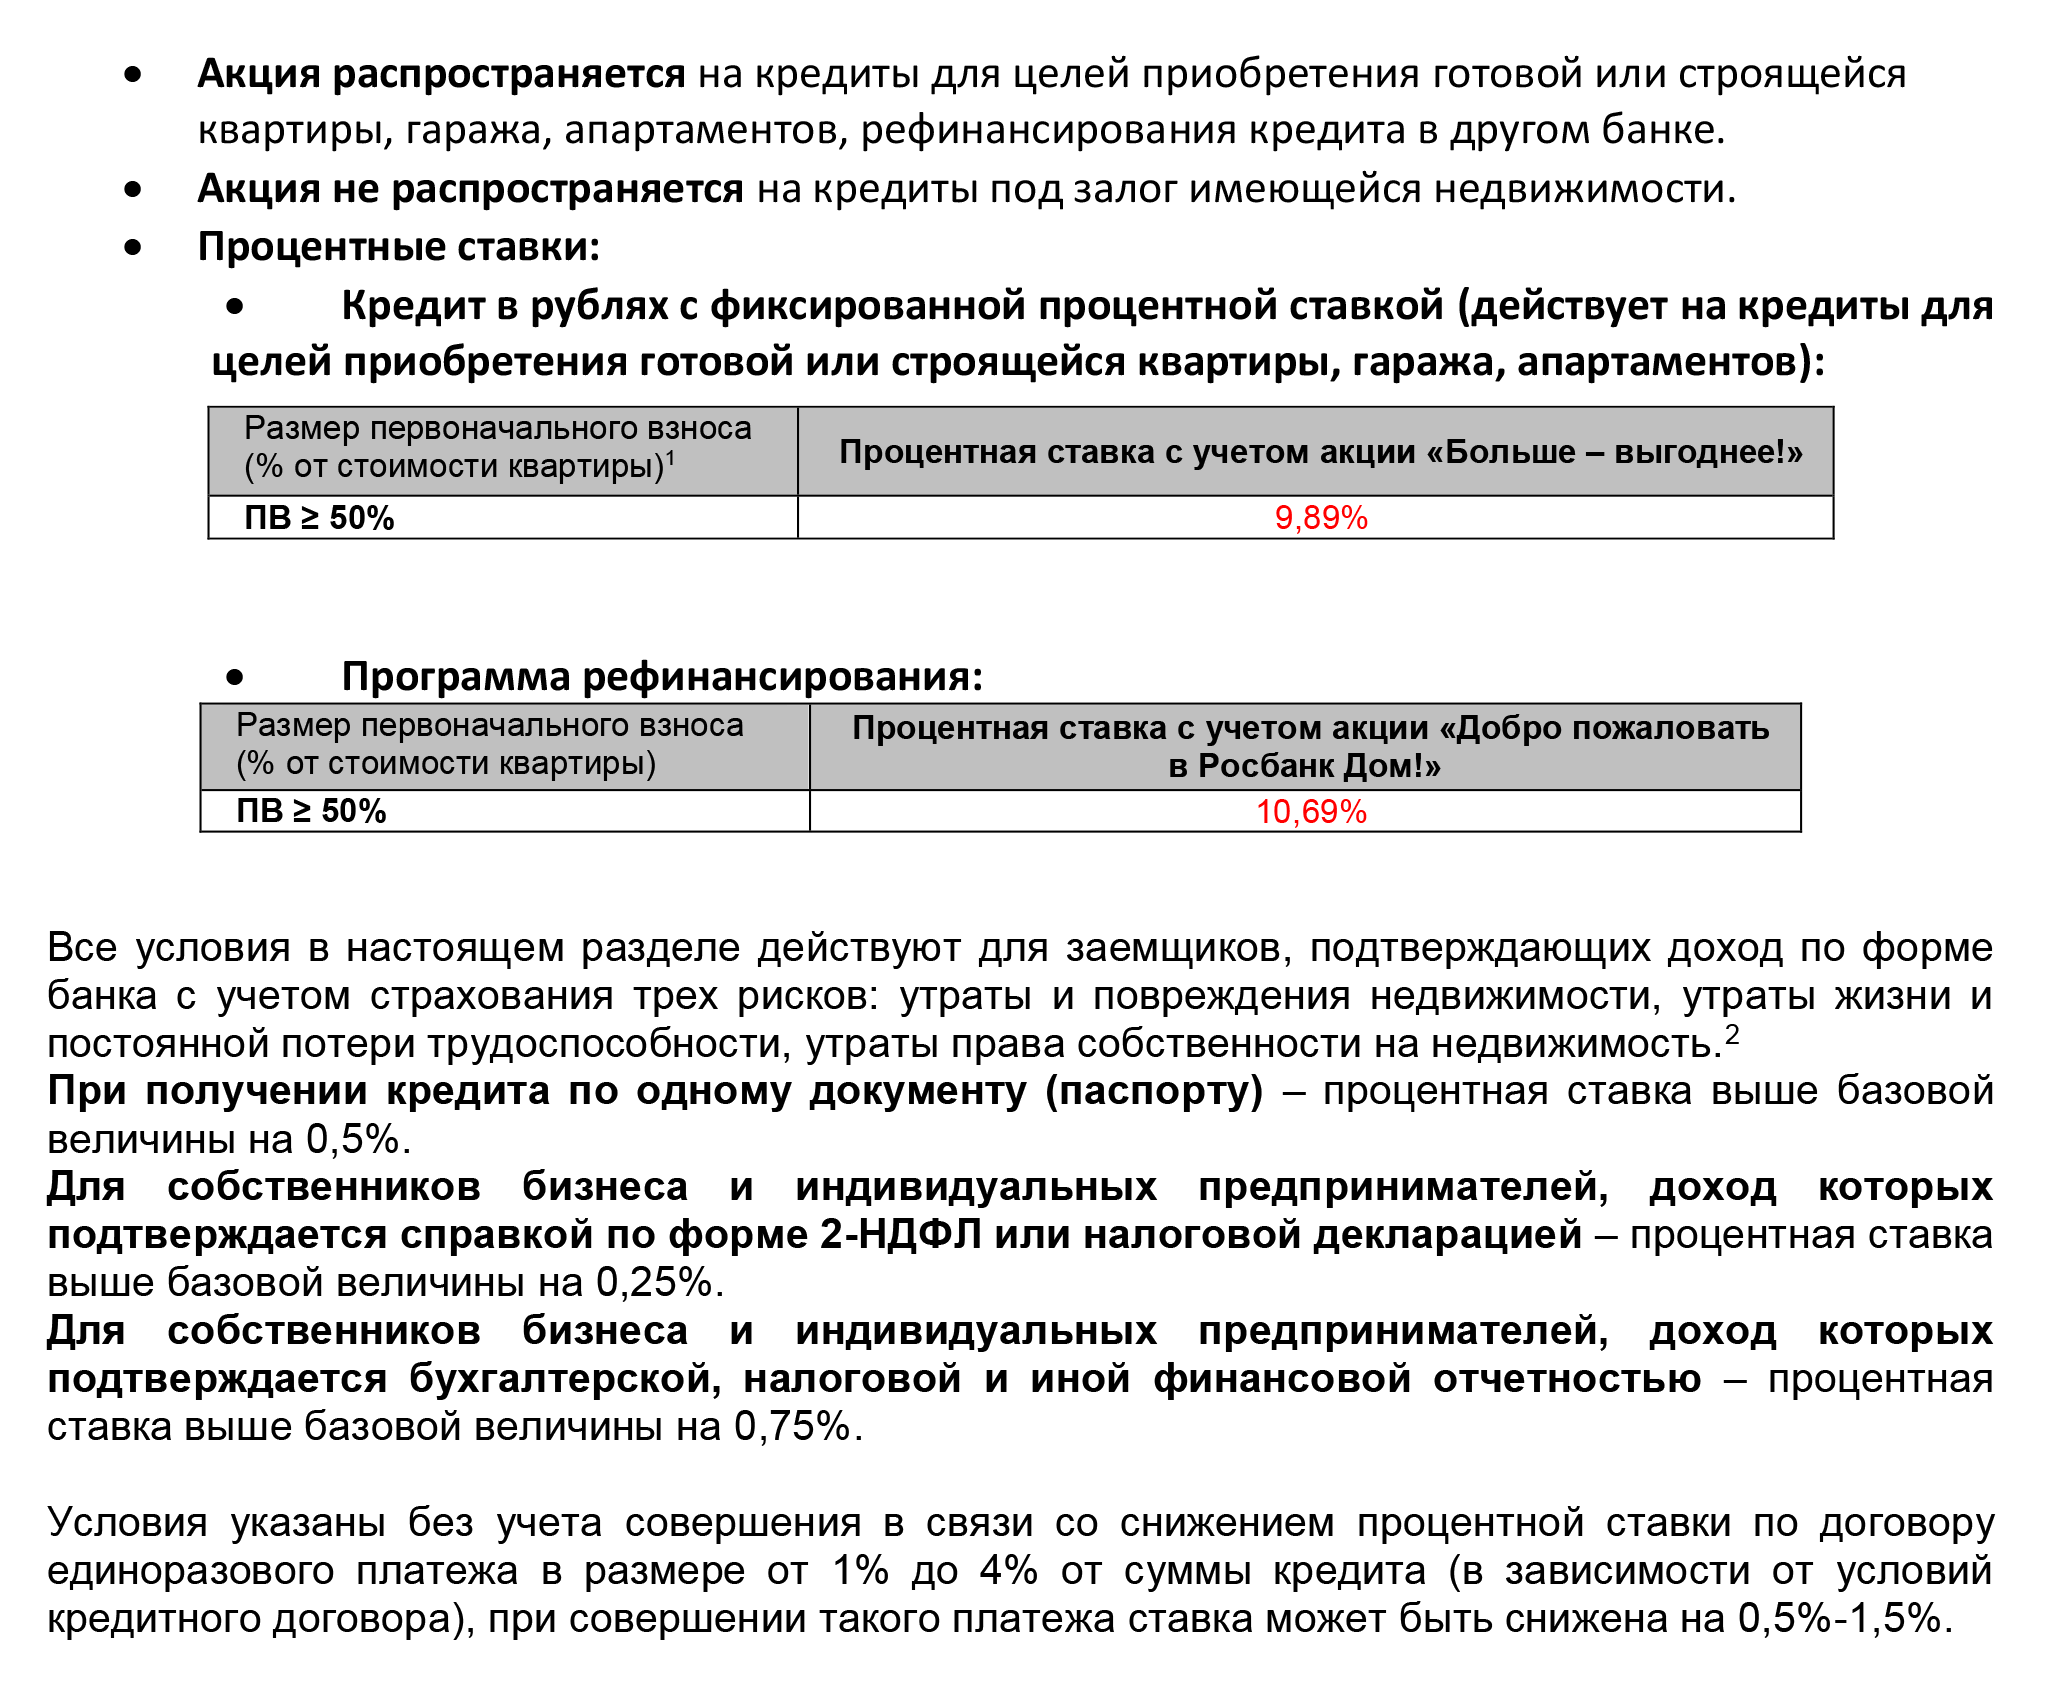 Сколько стоит патент на работу в московской области для иностранцев